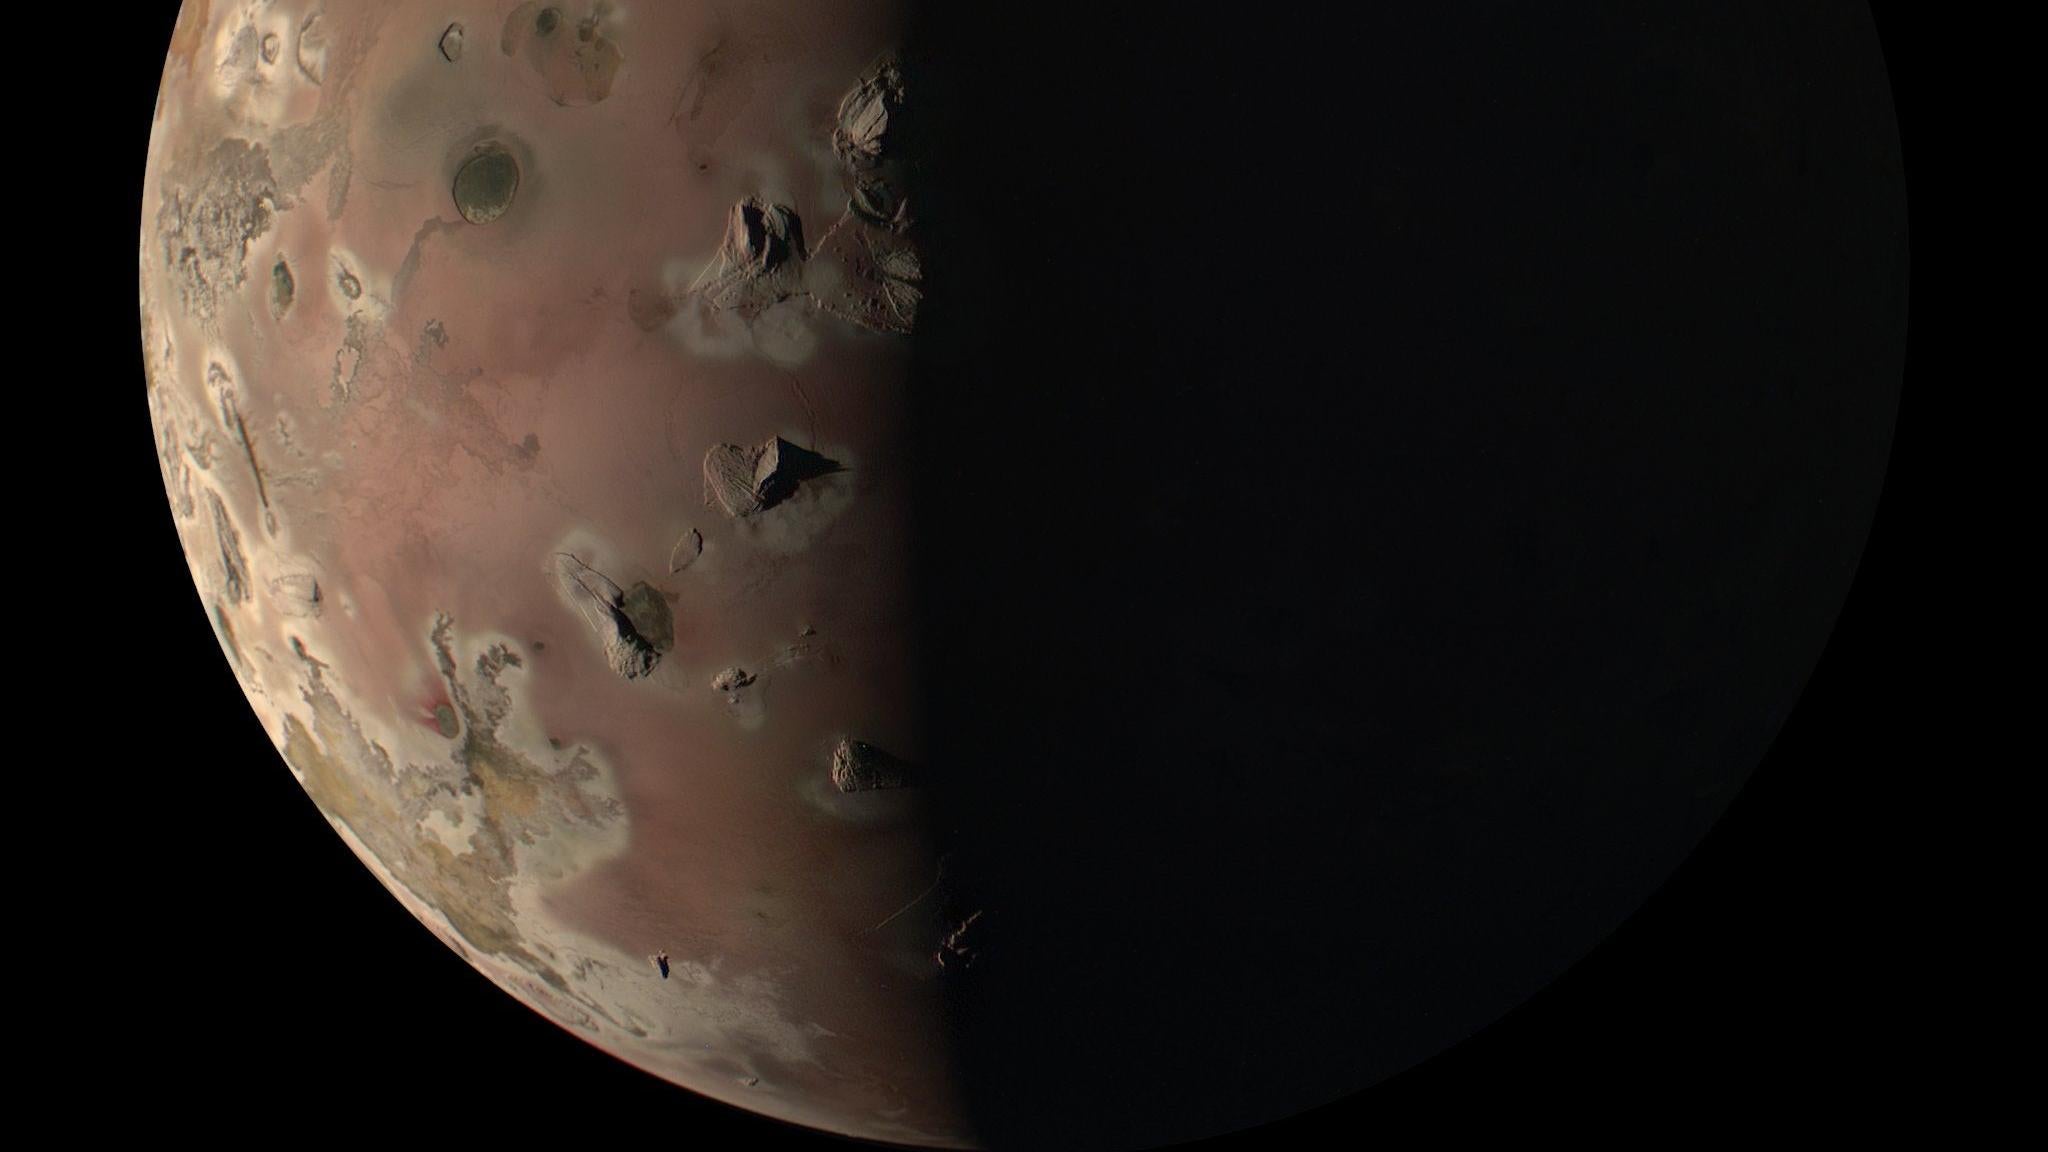 Zobacz nowe, niesamowite zdjęcia z bliska wulkanicznego księżyca Jowisza, Io